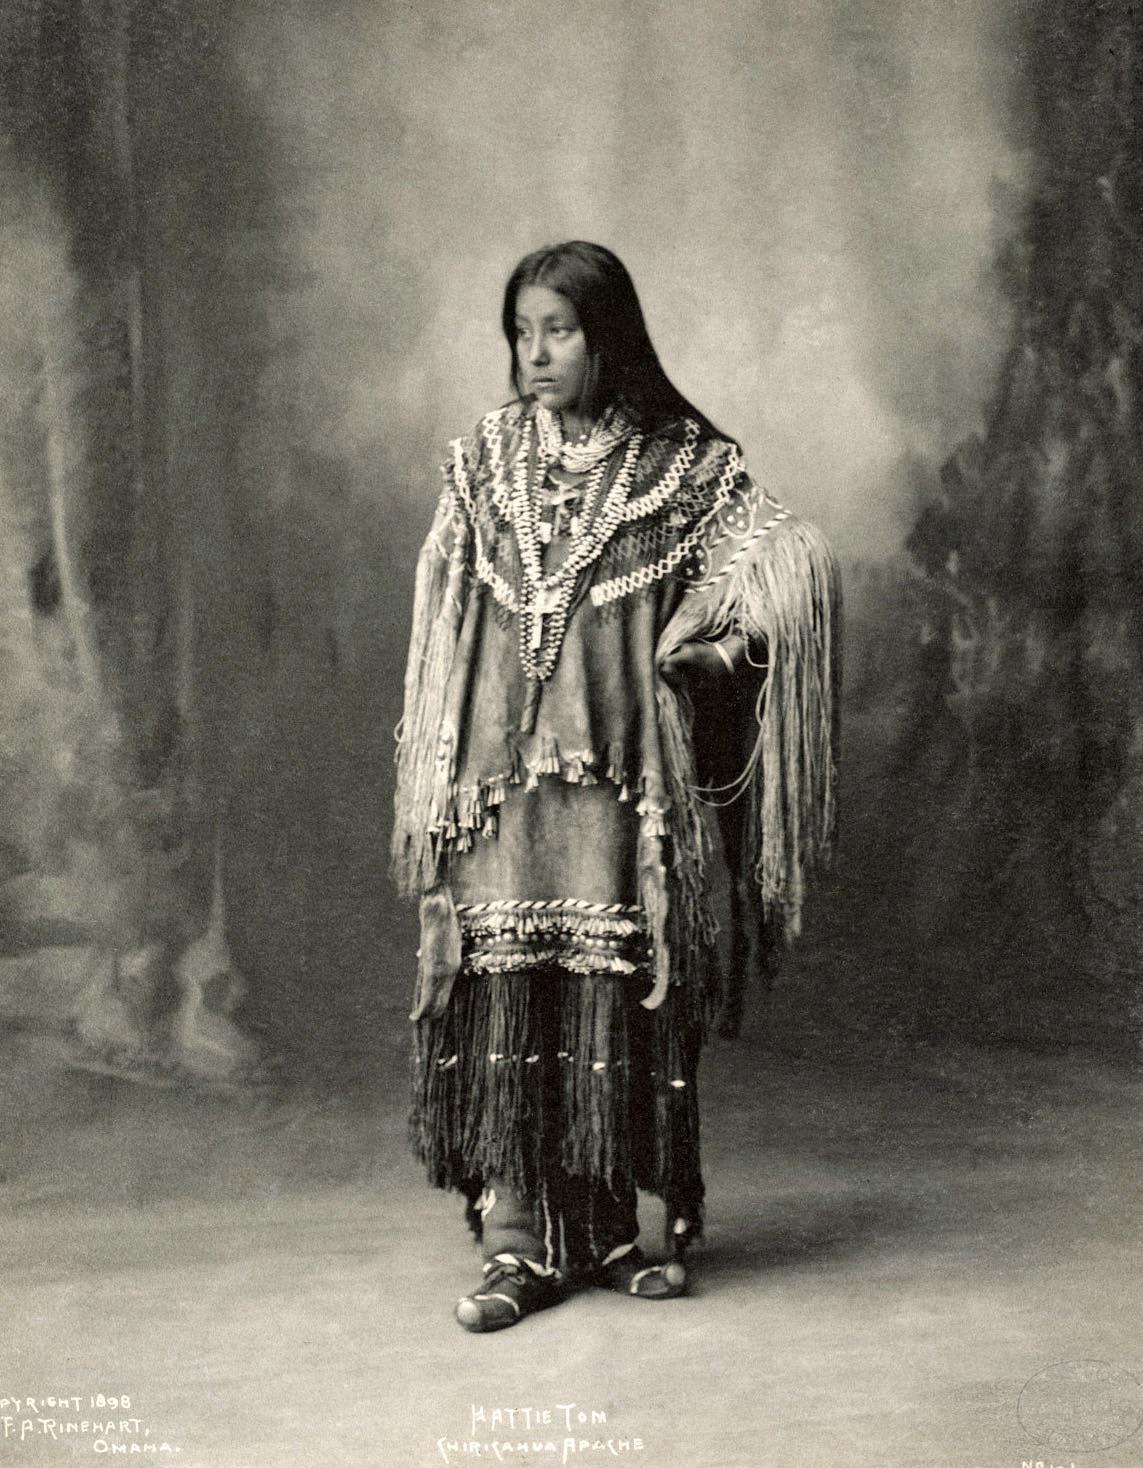 Hattie Tom, Chiricahua Apache, 19th century photograph. Photographer Frank Rinehart.